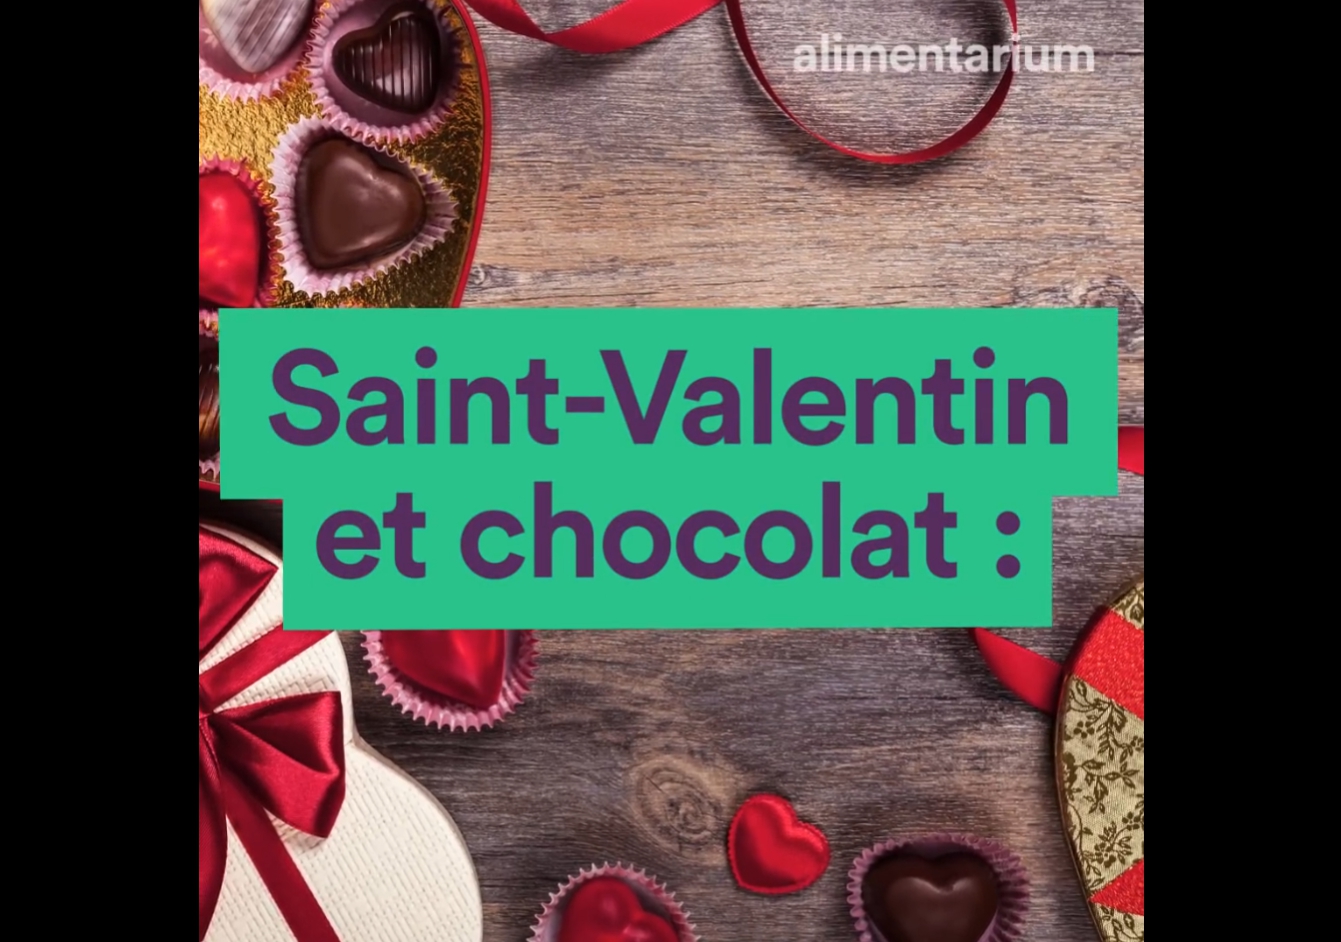 Saint-Valentin et chocolat : des noces tardives